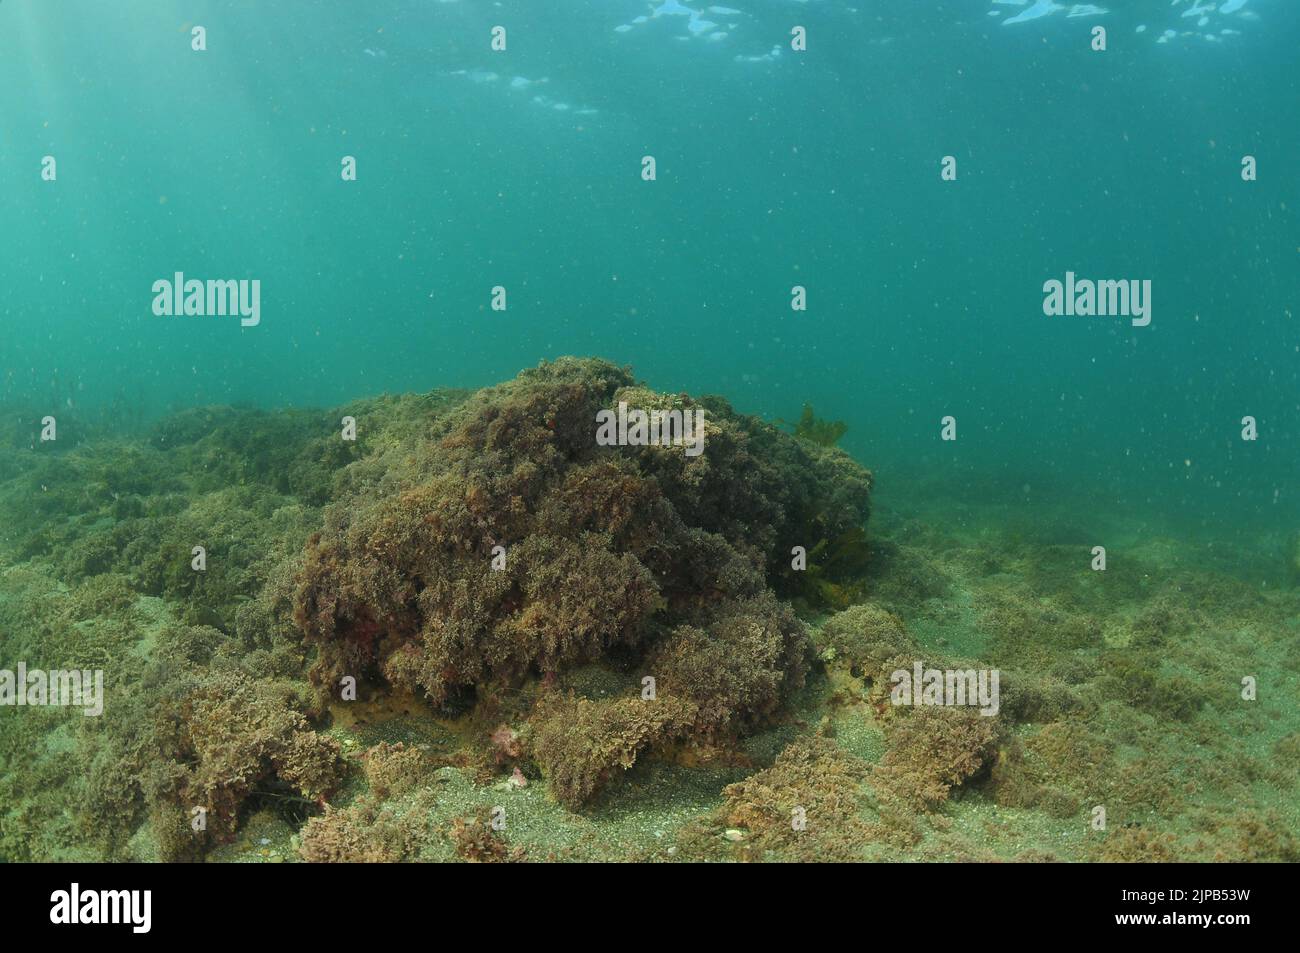 Escarpado lecho marino en aguas poco profundas cubiertas de algas pardas cortas y arena gruesa. Ubicación: Leigh Nueva Zelanda Foto de stock